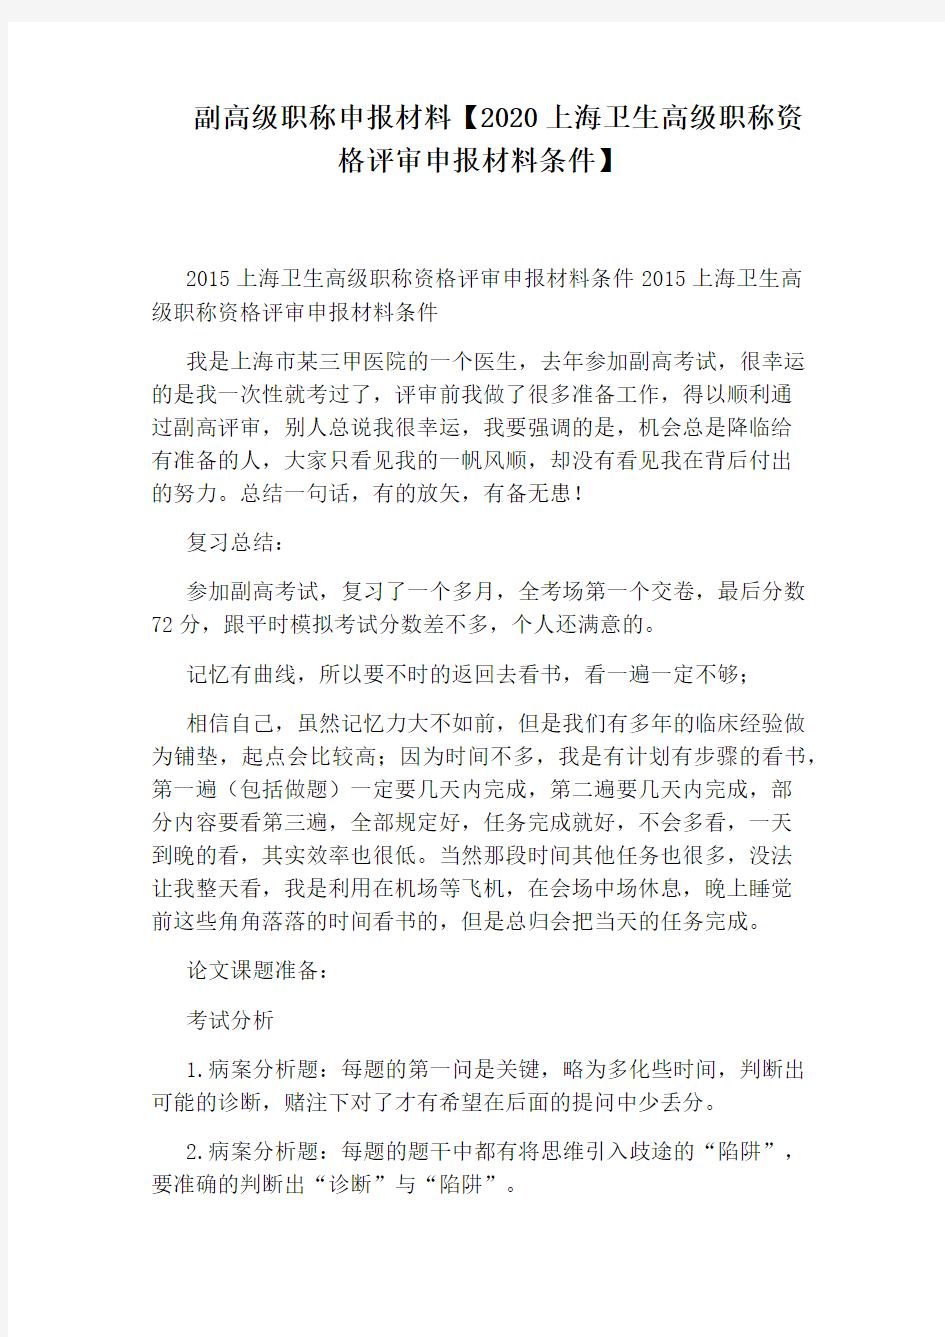 副高级职称申报材料【2020上海卫生高级职称资格评审申报材料条件】